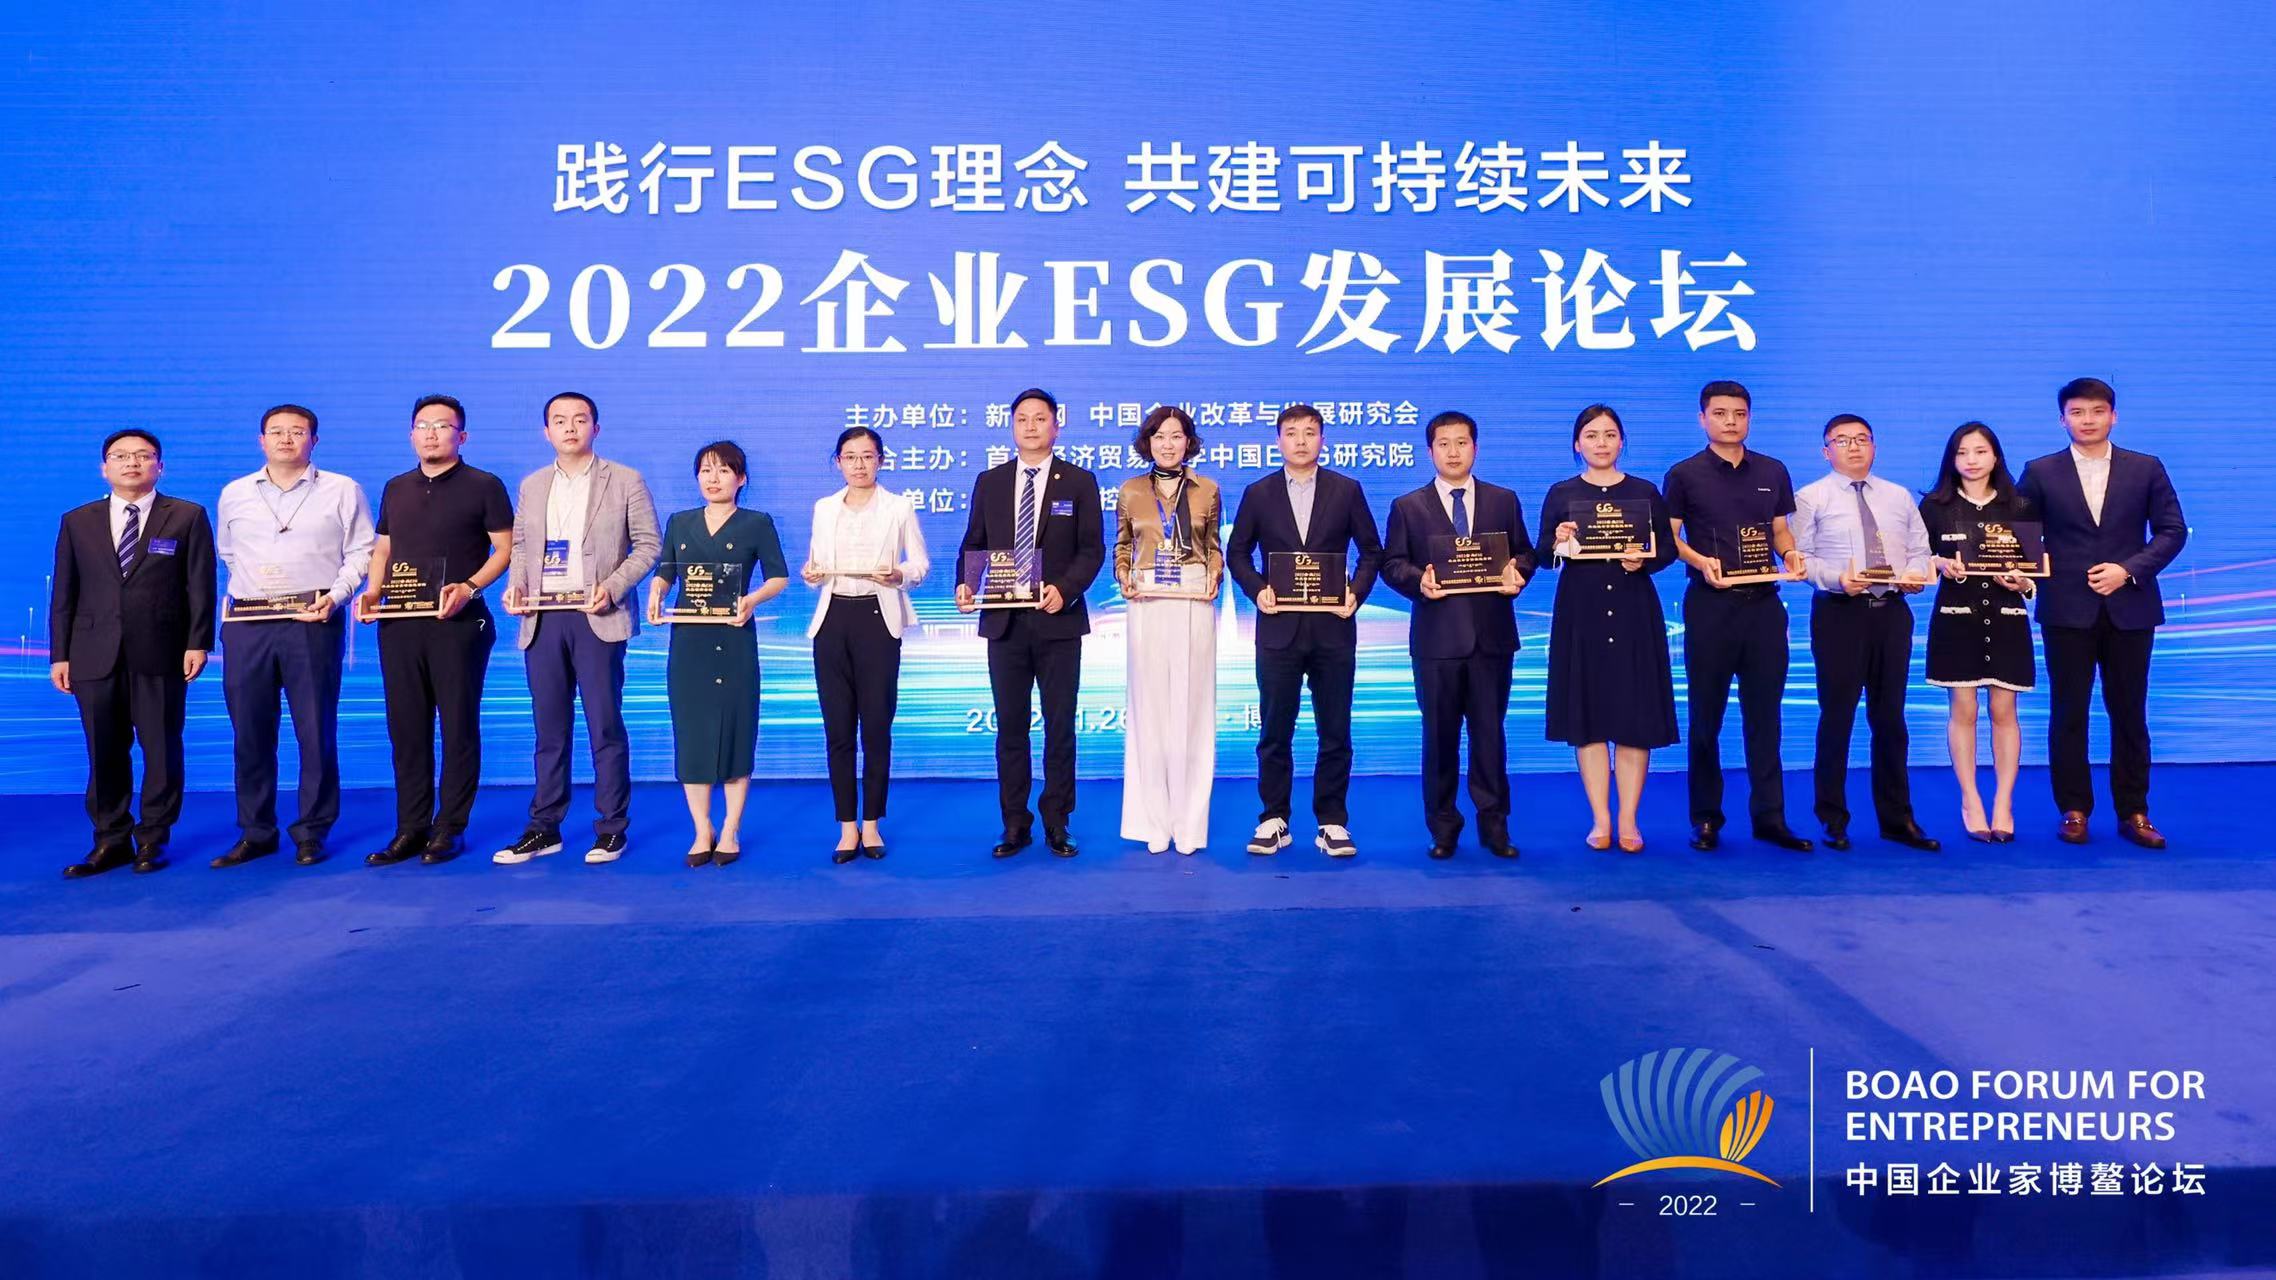 2022中國企業家博鰲論壇舉行 為期4天 將舉辦40余場分論壇